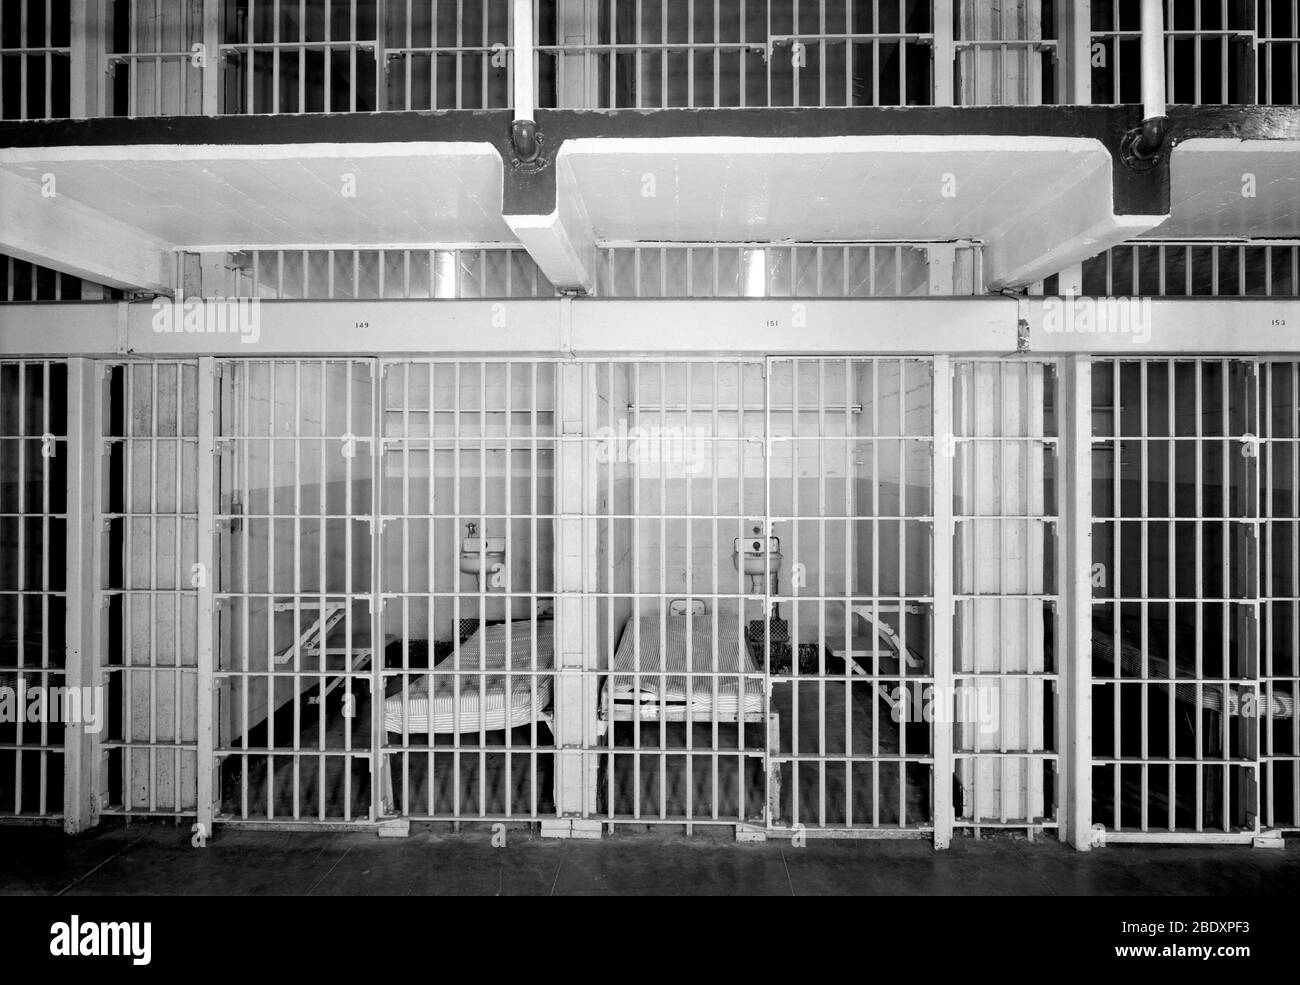 Alcatraz, blocco celle C, celle 149 e 151, 1986 Foto Stock